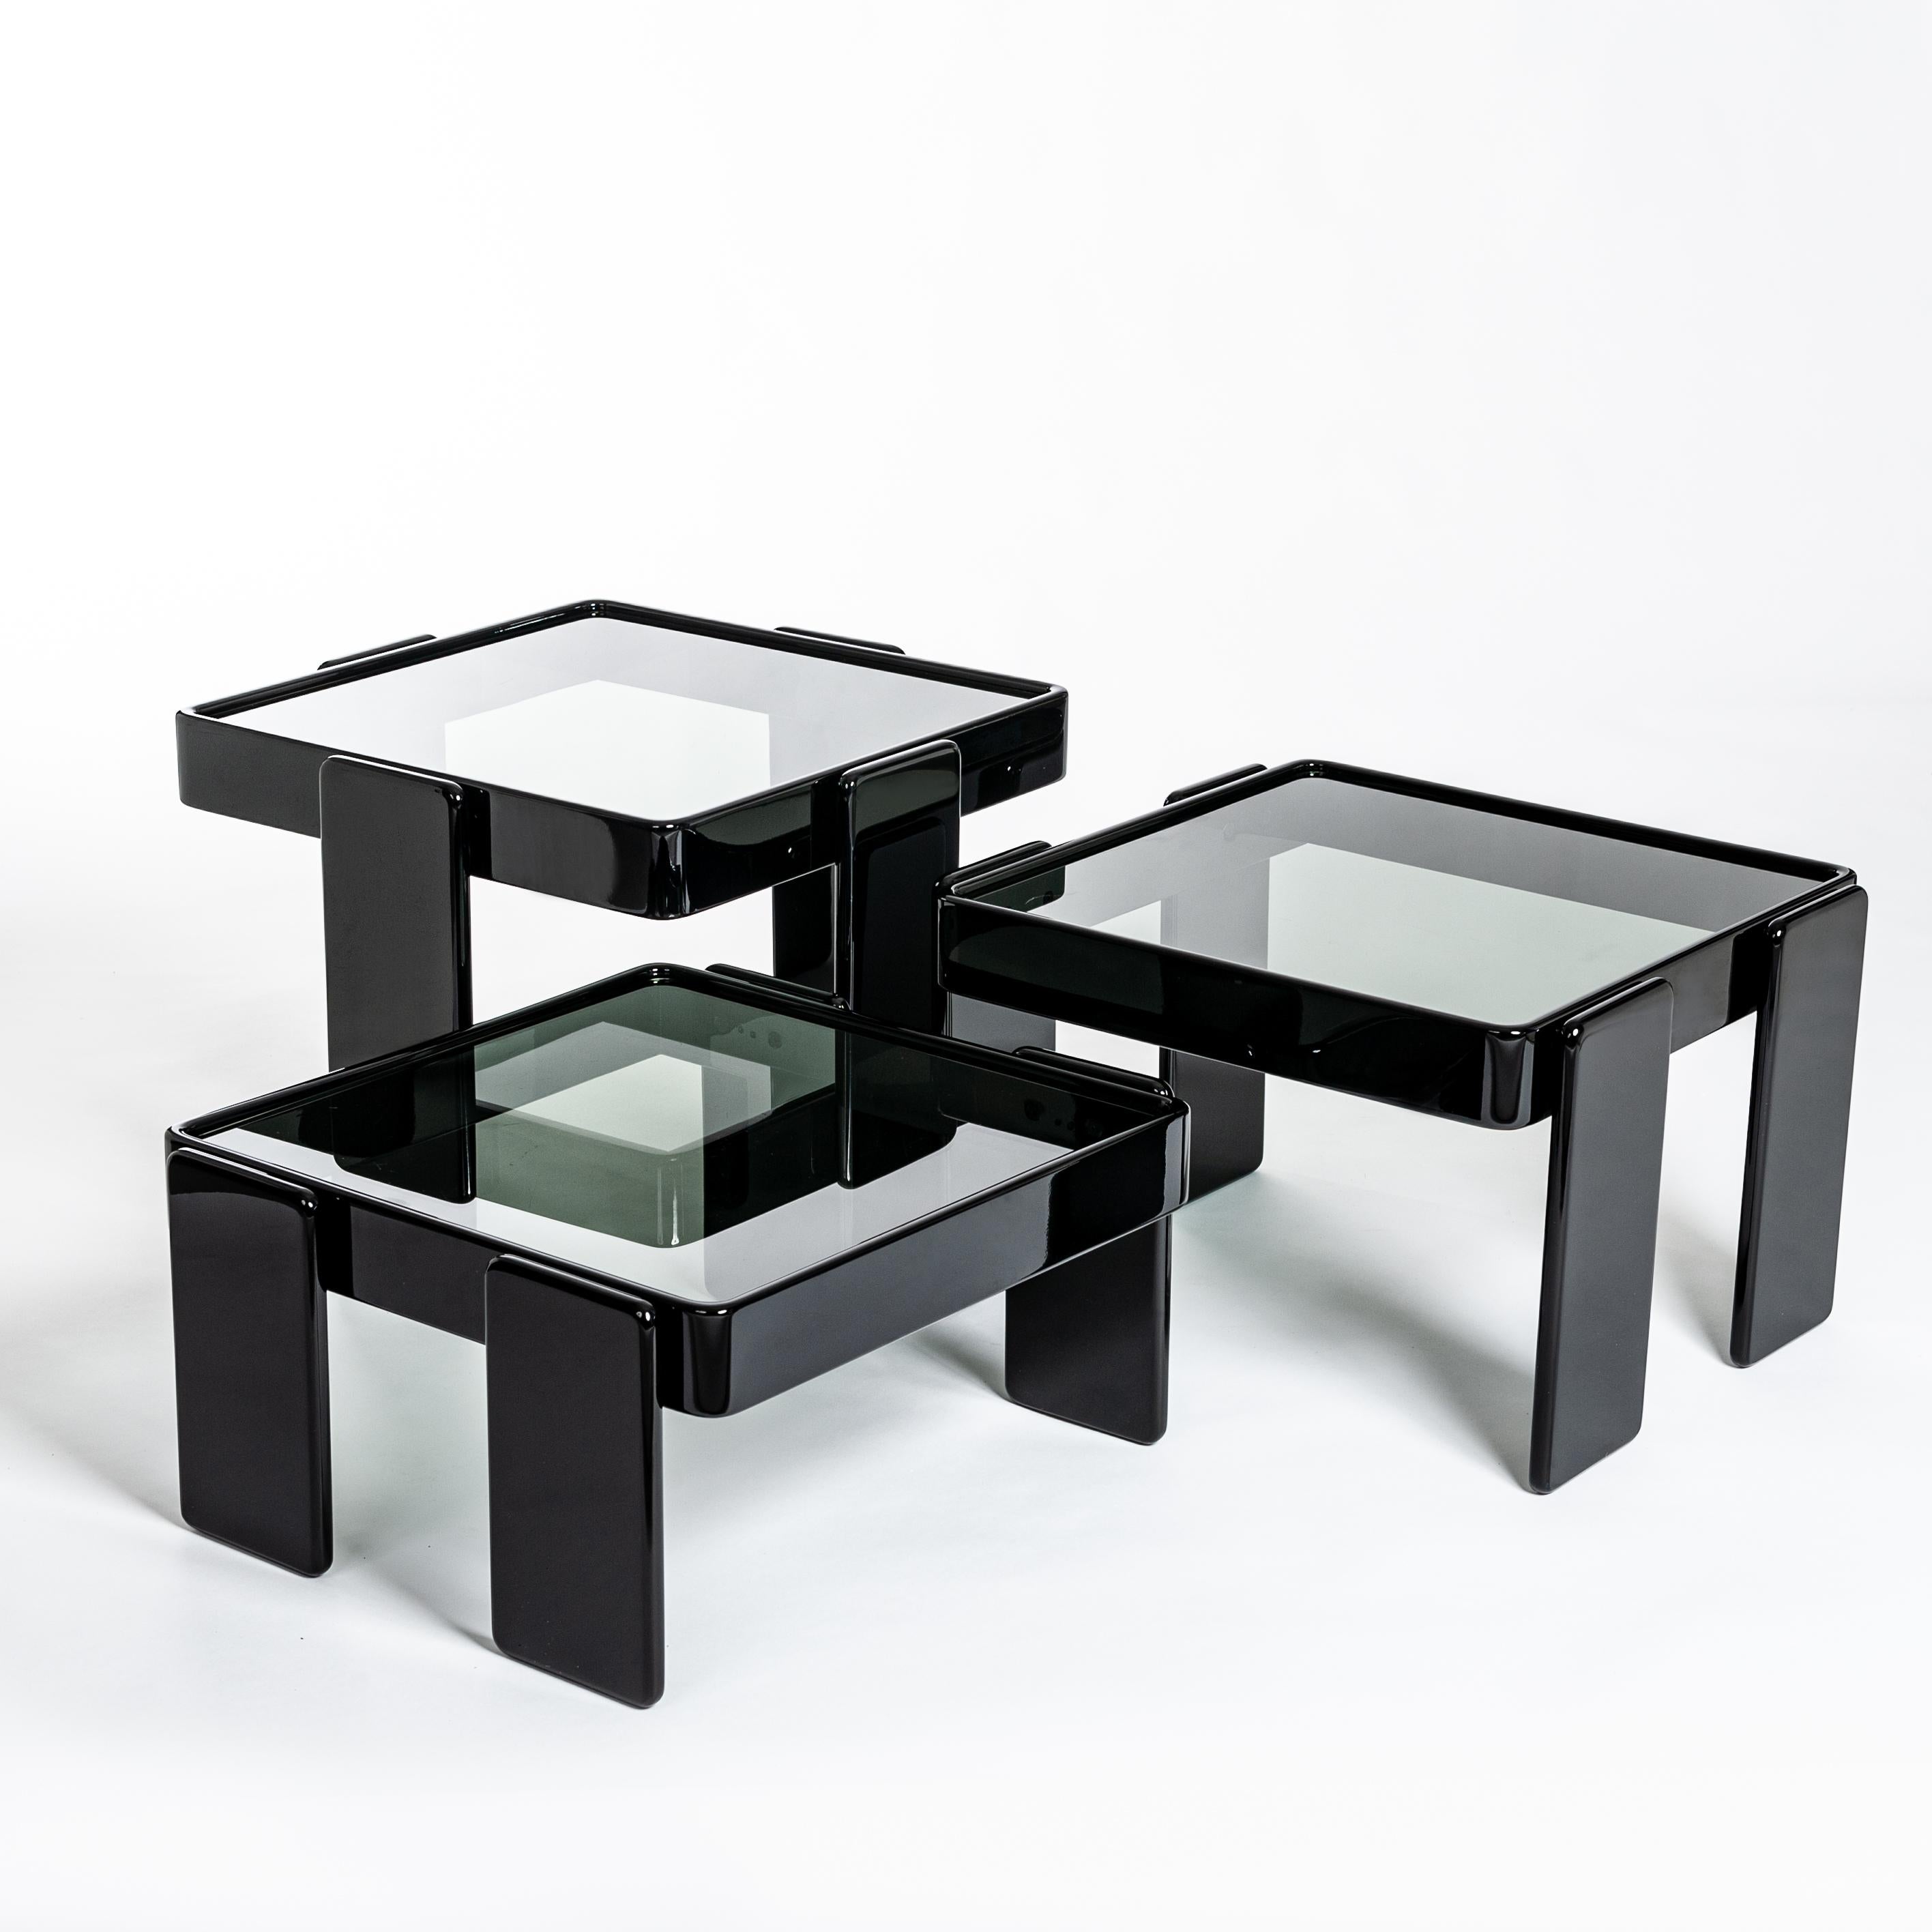 Satz von drei stapelbaren Tischen von Gianfranco Frattini, Italien, 1970er Jahre.
Das Holz wurde aufgrund der abgenutzten Oberfläche komplett neu lackiert und ist nun in perfektem Zustand.
Die grünen Originaltischplatten aus Glas passen perfekt zur